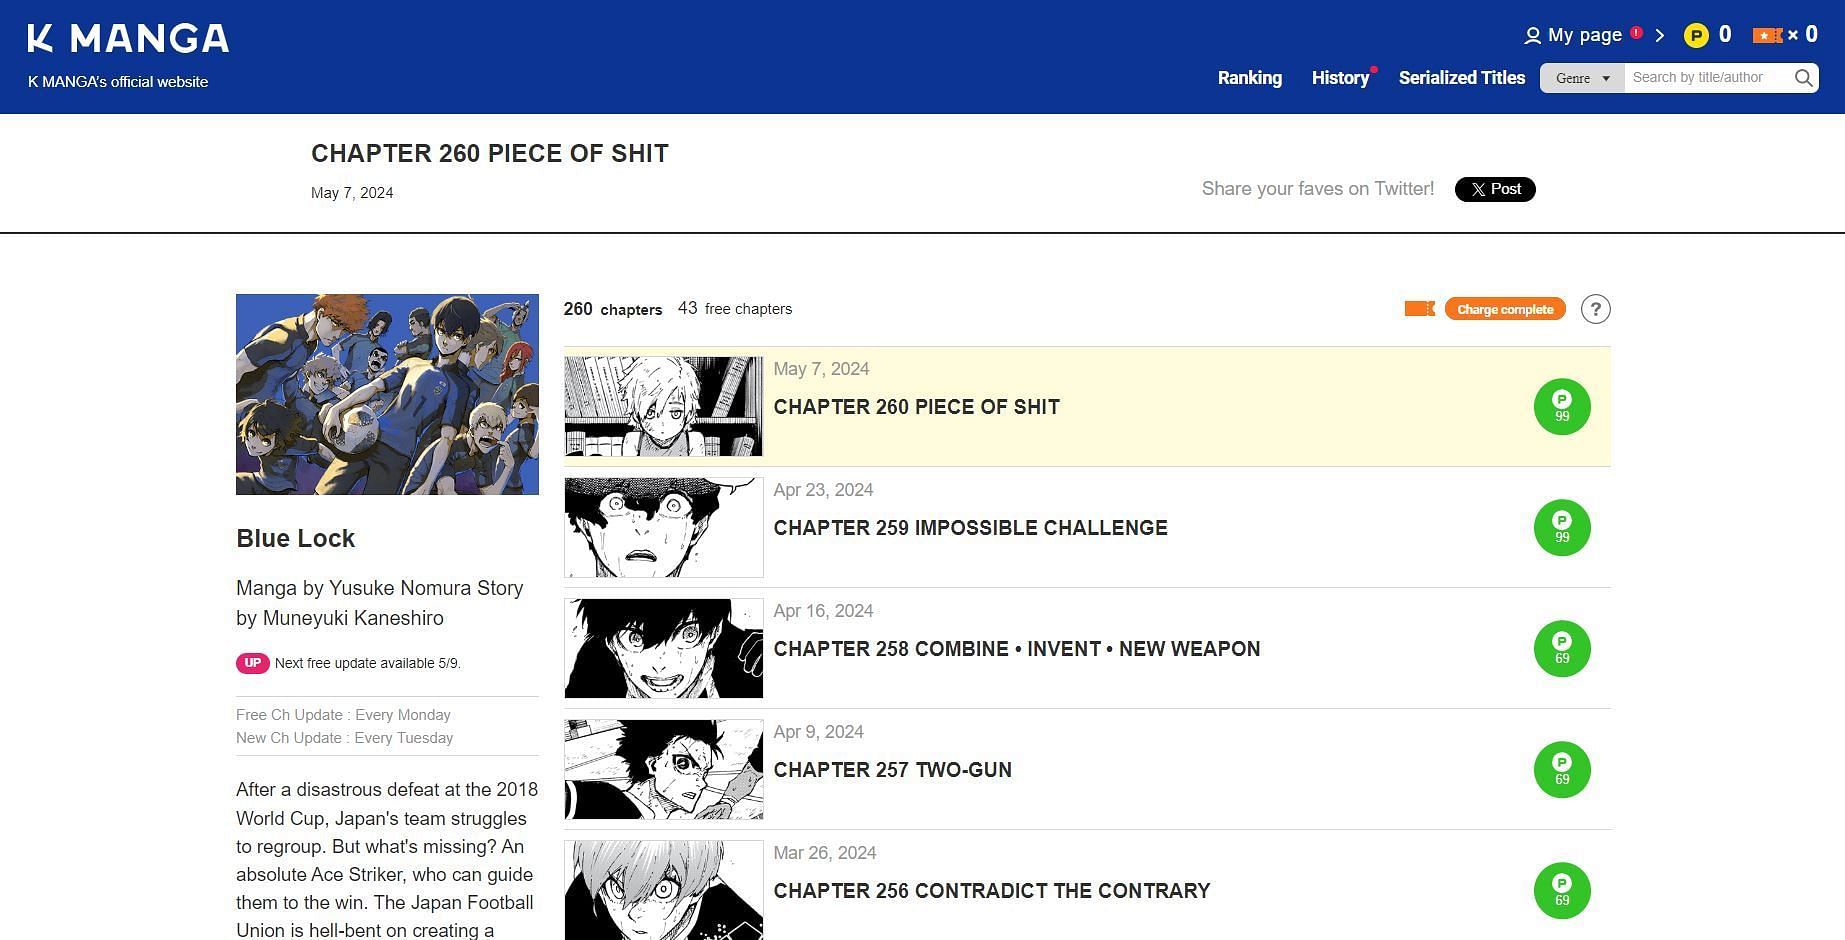 Blue Lock manga details on K Manga website (Image via Kodansha)